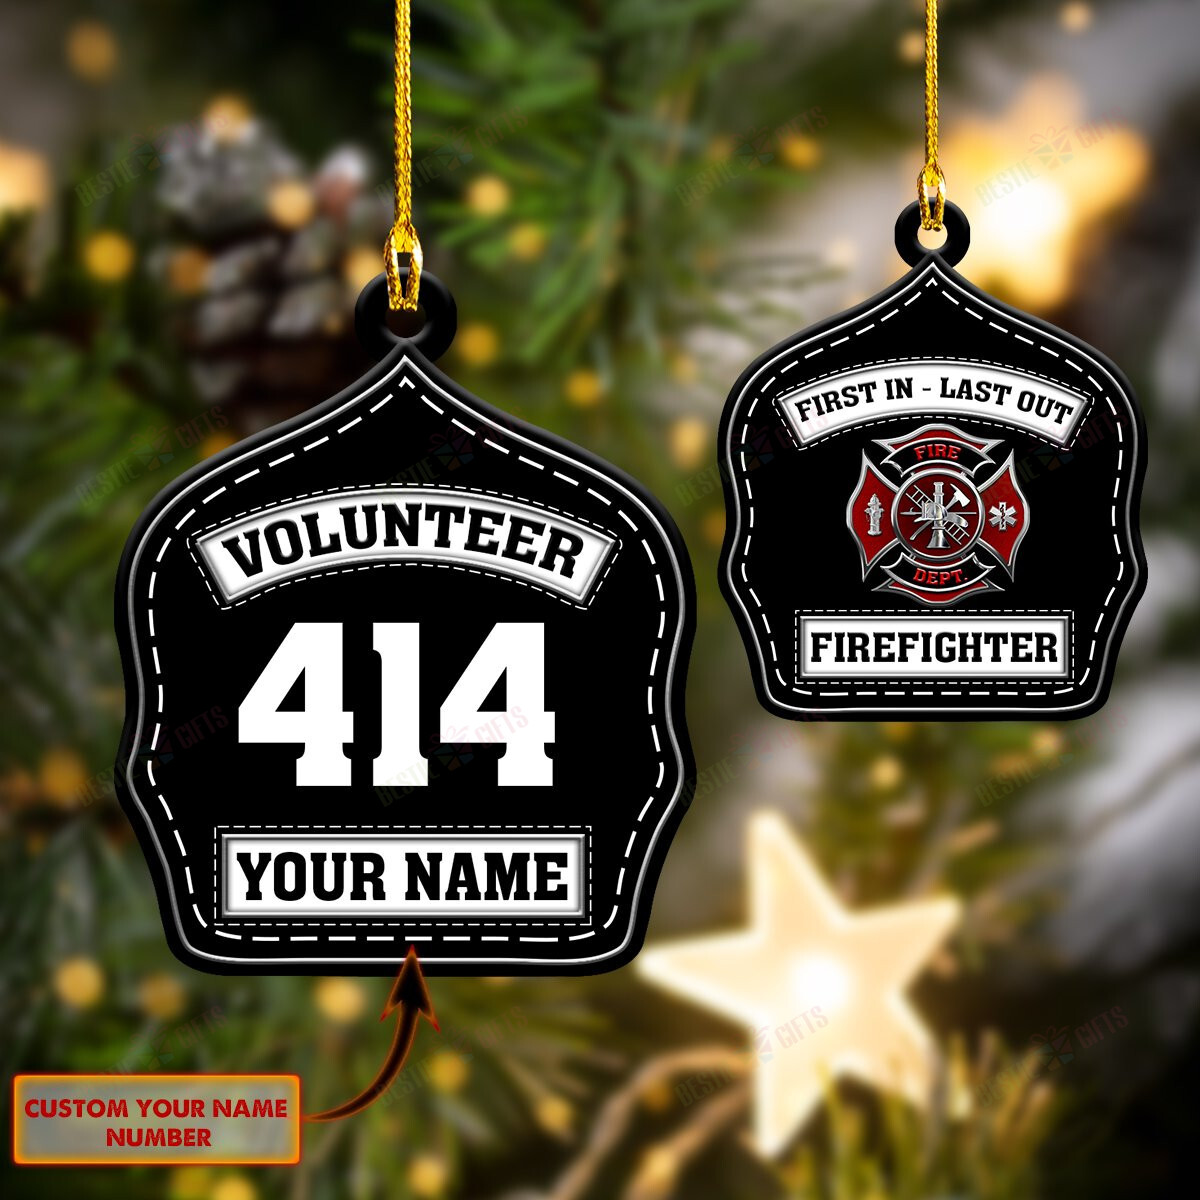 Volunteer Firefighter Gift Firefighter Ornaments Volunteer Firefighter Christmas Tree Ornaments Firefighter Christmas Ornaments